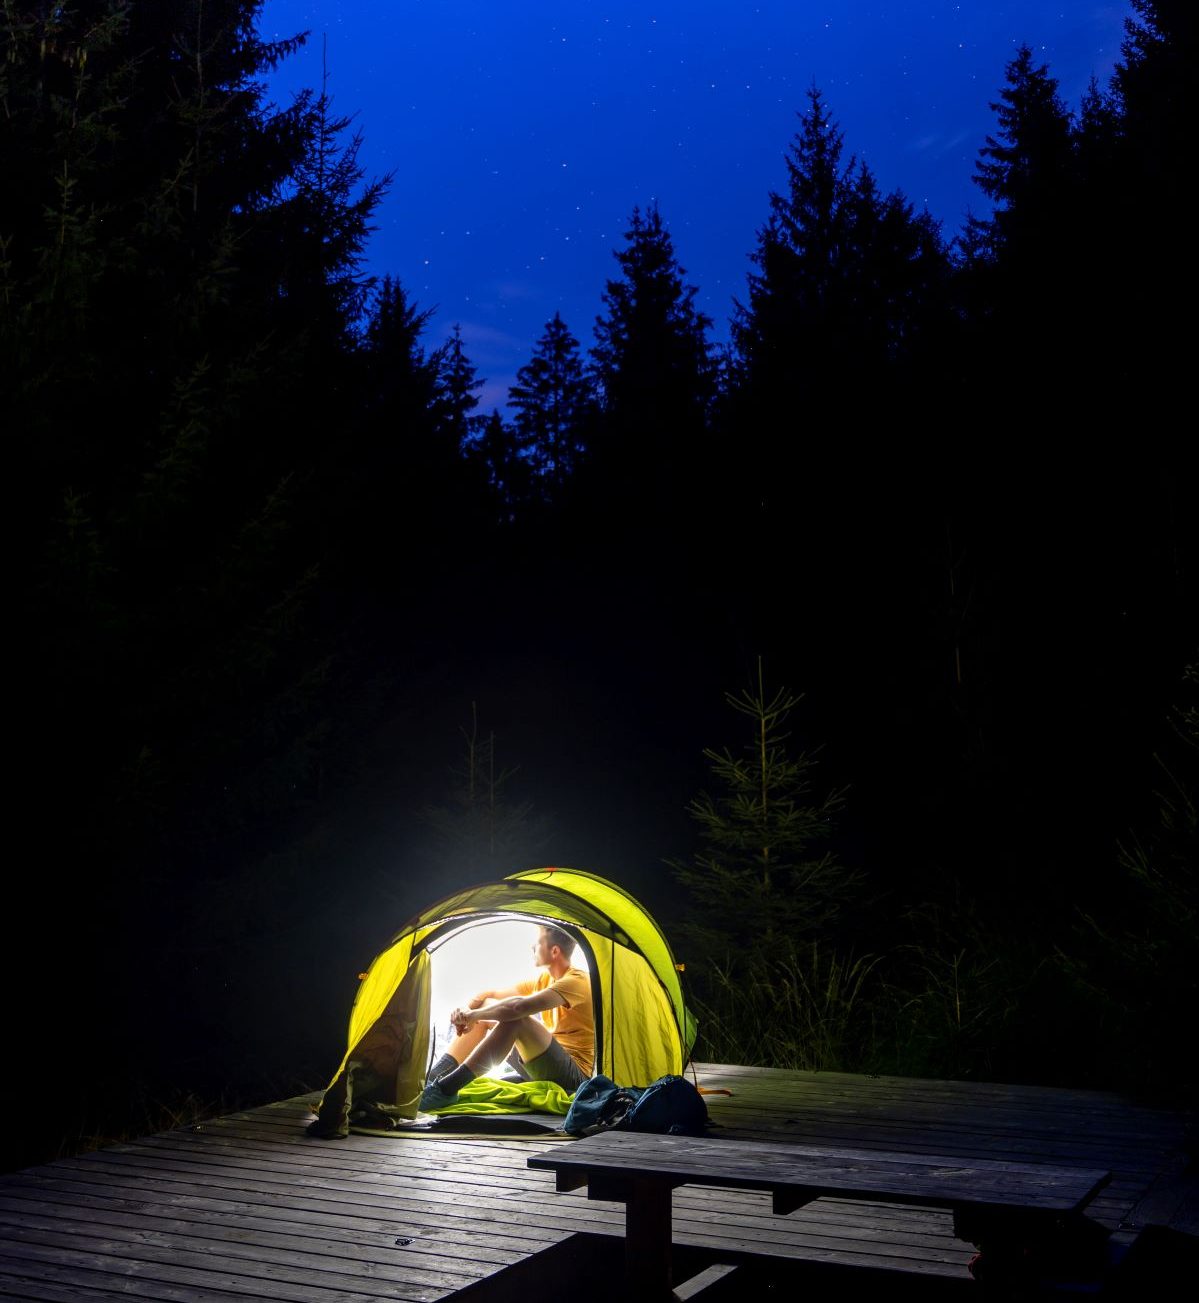 Ein Mann mit einem gelben Hemd sitzt nachts in einem kleinen Zelt auf einer Holzplattform. Das Zelt ist beleuchtet und hell, aber der Himmel und die umliegenden Wälder sind dunkel.